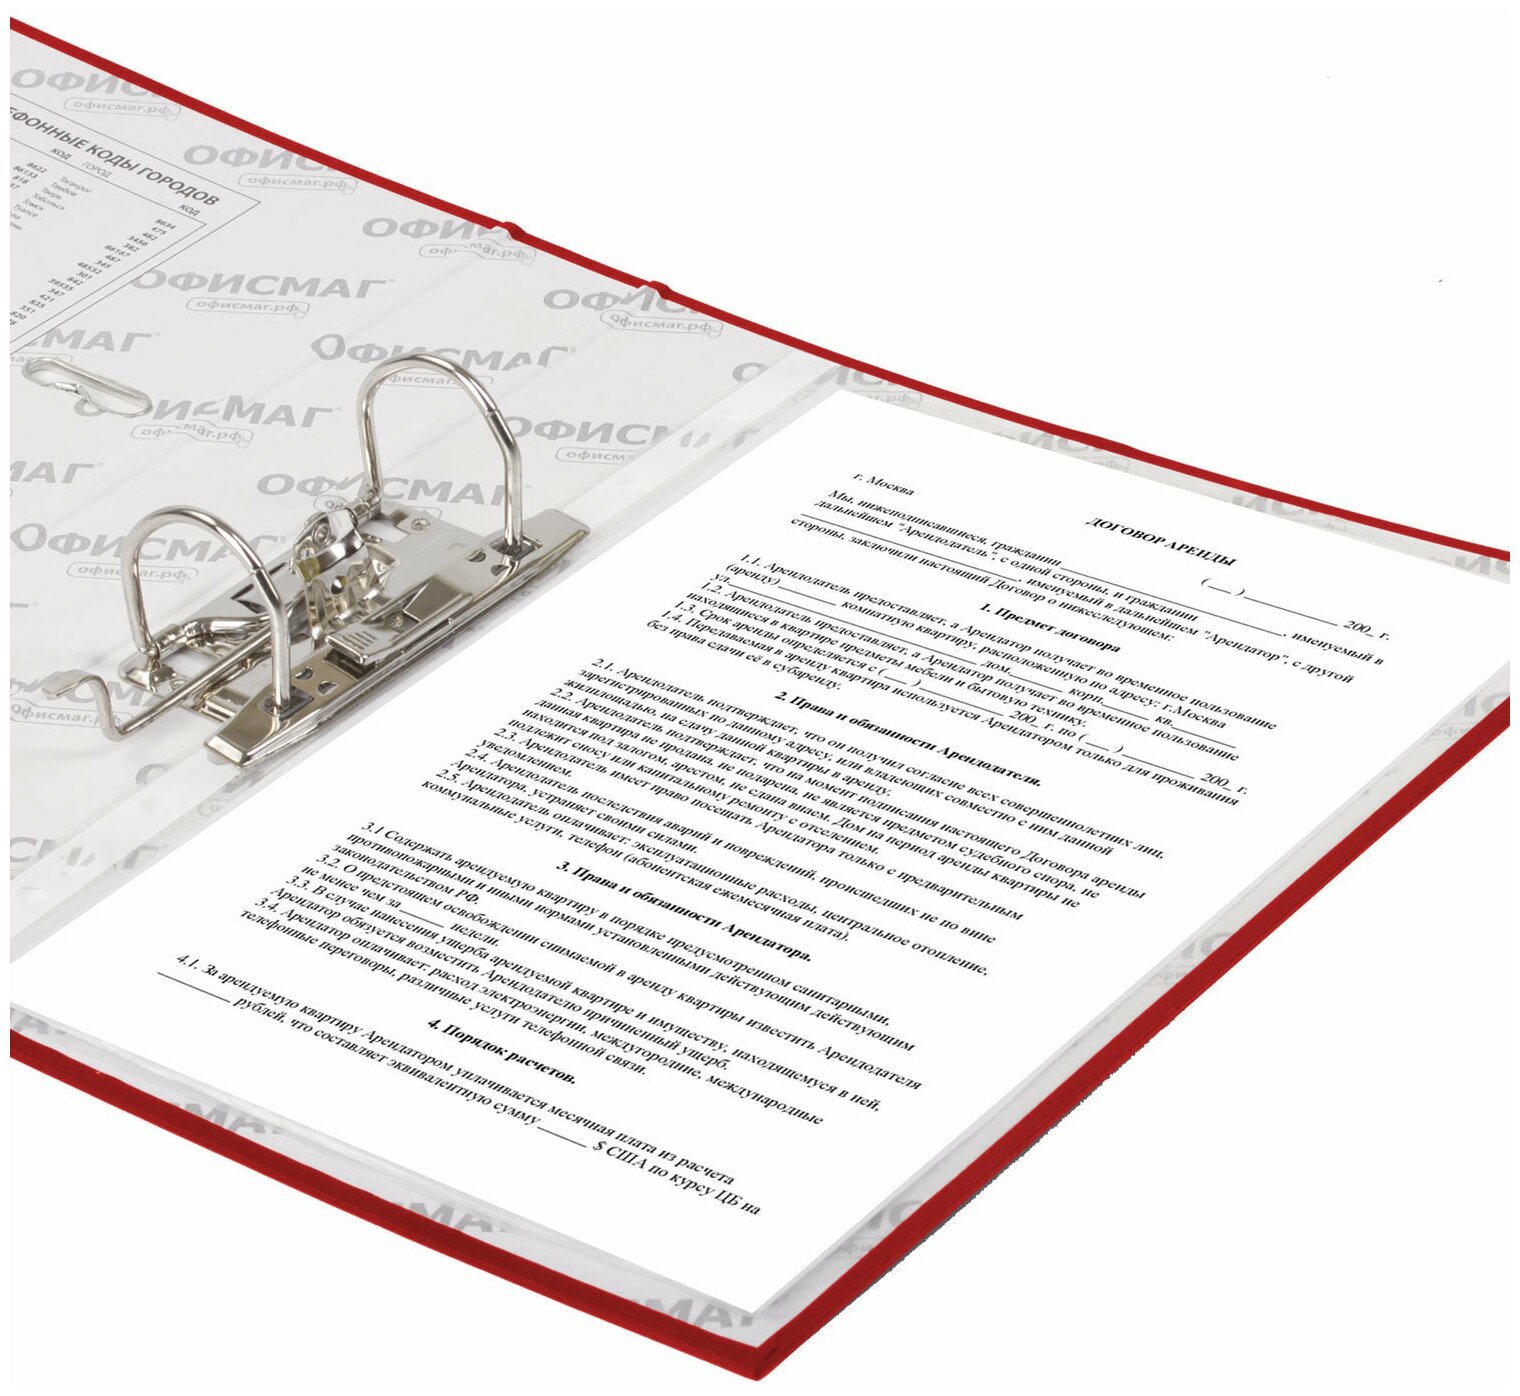 Папка-регистратор офисмаг с арочным механизмом, покрытие из ПВХ, 50 мм, красная, 25 шт - фото №8